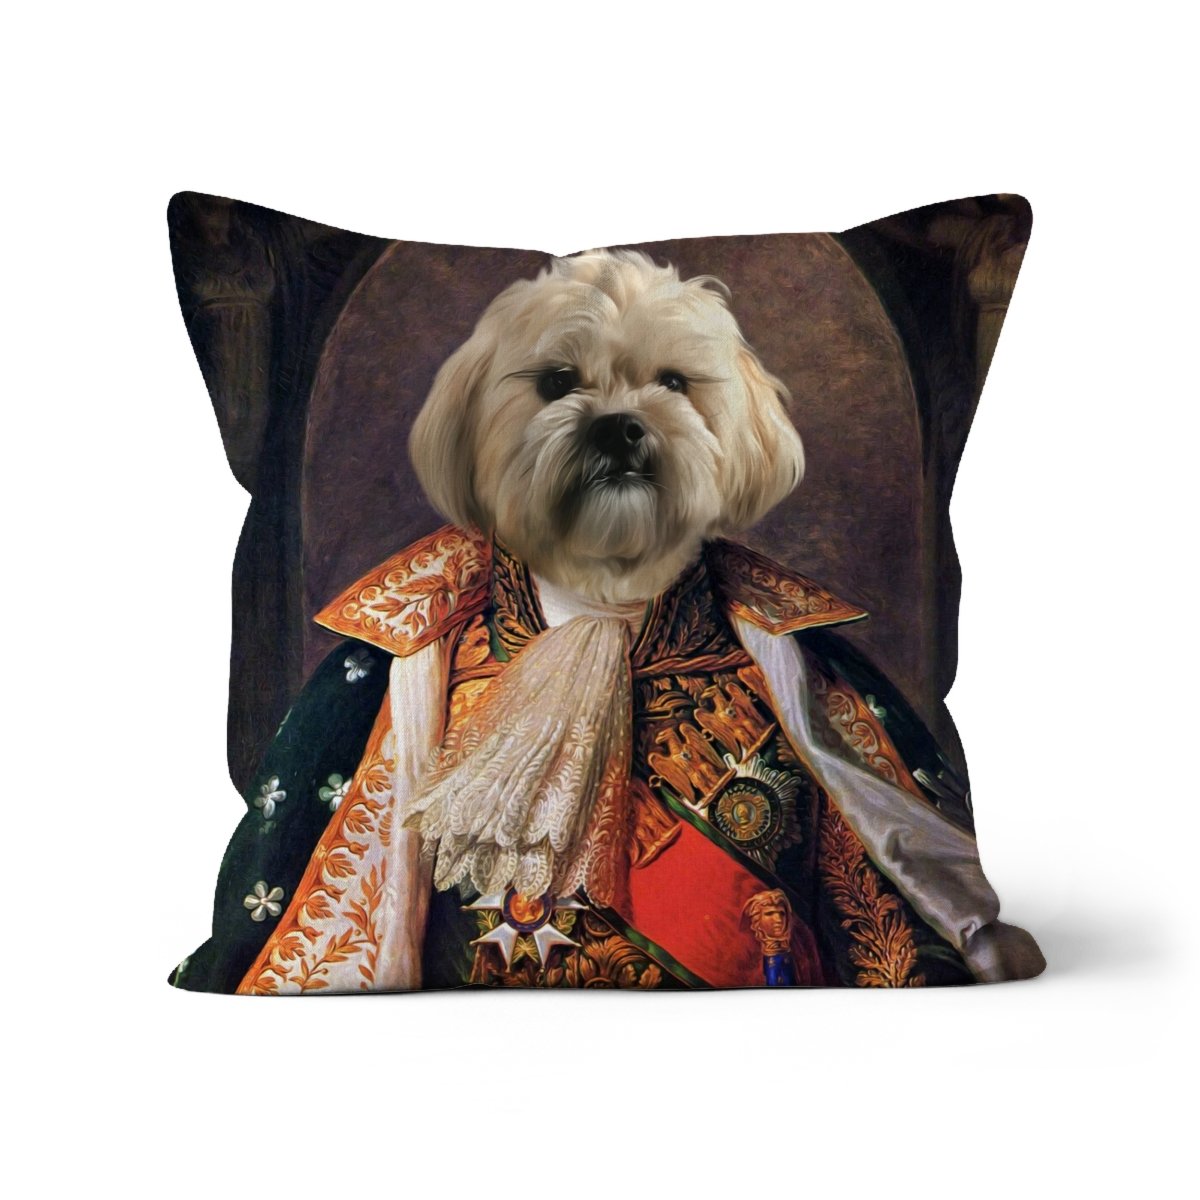 His Highness: Custom Pet Cushion - Paw & Glory - #pet portraits# - #dog portraits# - #pet portraits uk#paw & glory, custom pet portrait pillow,dog memory pillow, pillow with pet picture, dog on pillow, dog memory pillow, pet pillow